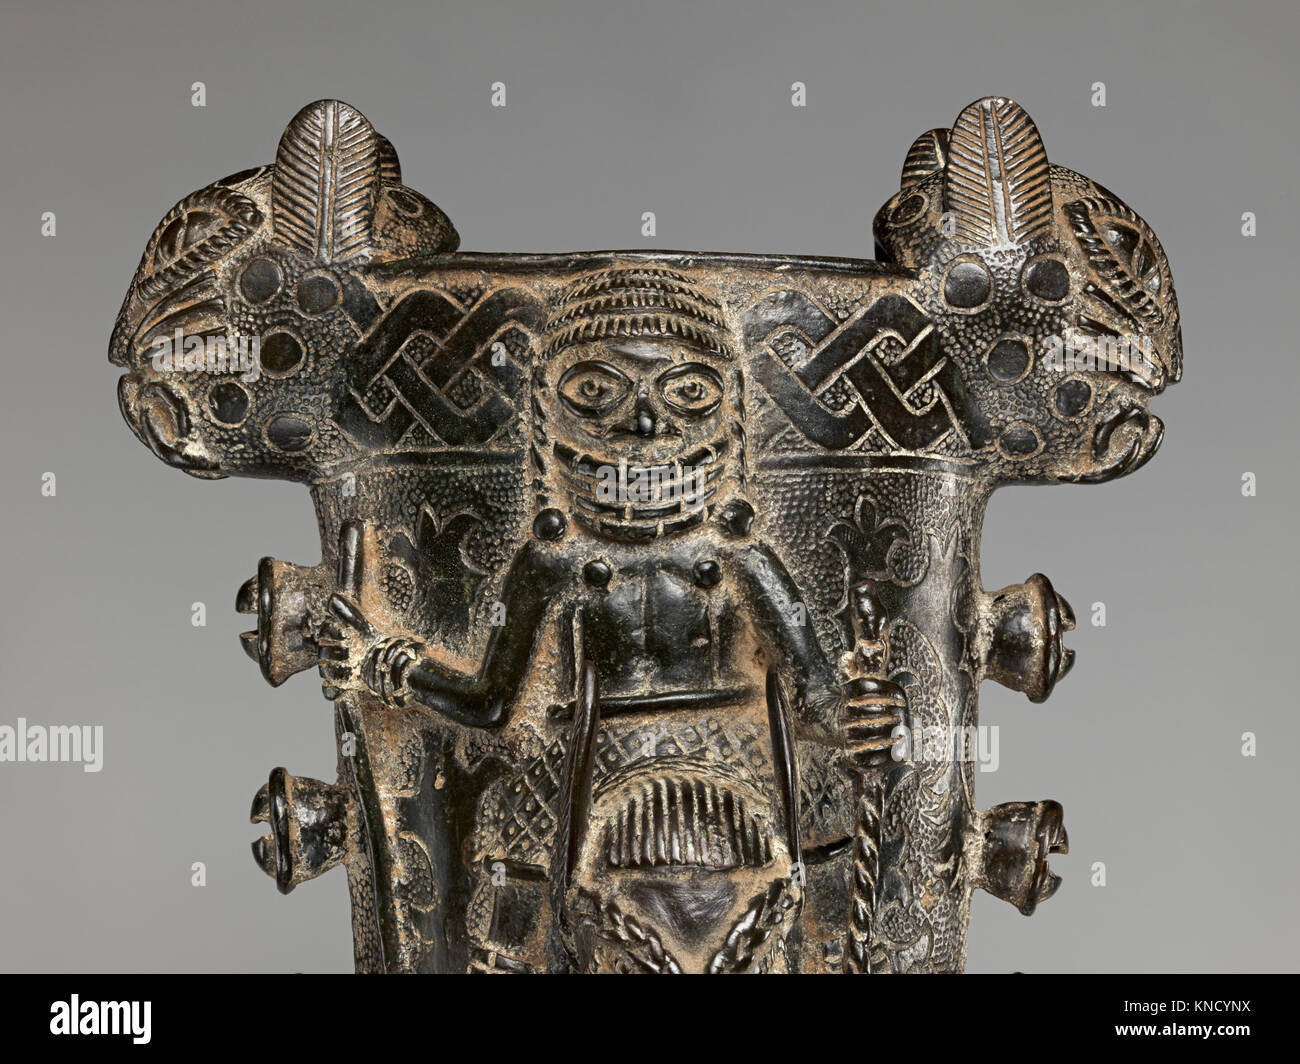 Bell (Ekure) MET DP-812-005 684576 Edo peoples, Bell (Ekure), early 19th?mid 19th century, Brass, L.14 15/16 x D. 4 3/16 x W. ?6 11/16 in. (37.9 x 10.6 x ?17 cm). The Metropolitan Museum of Art, New York. Purchase, Amati Gifts, 2015 (2015.450) Stock Photo